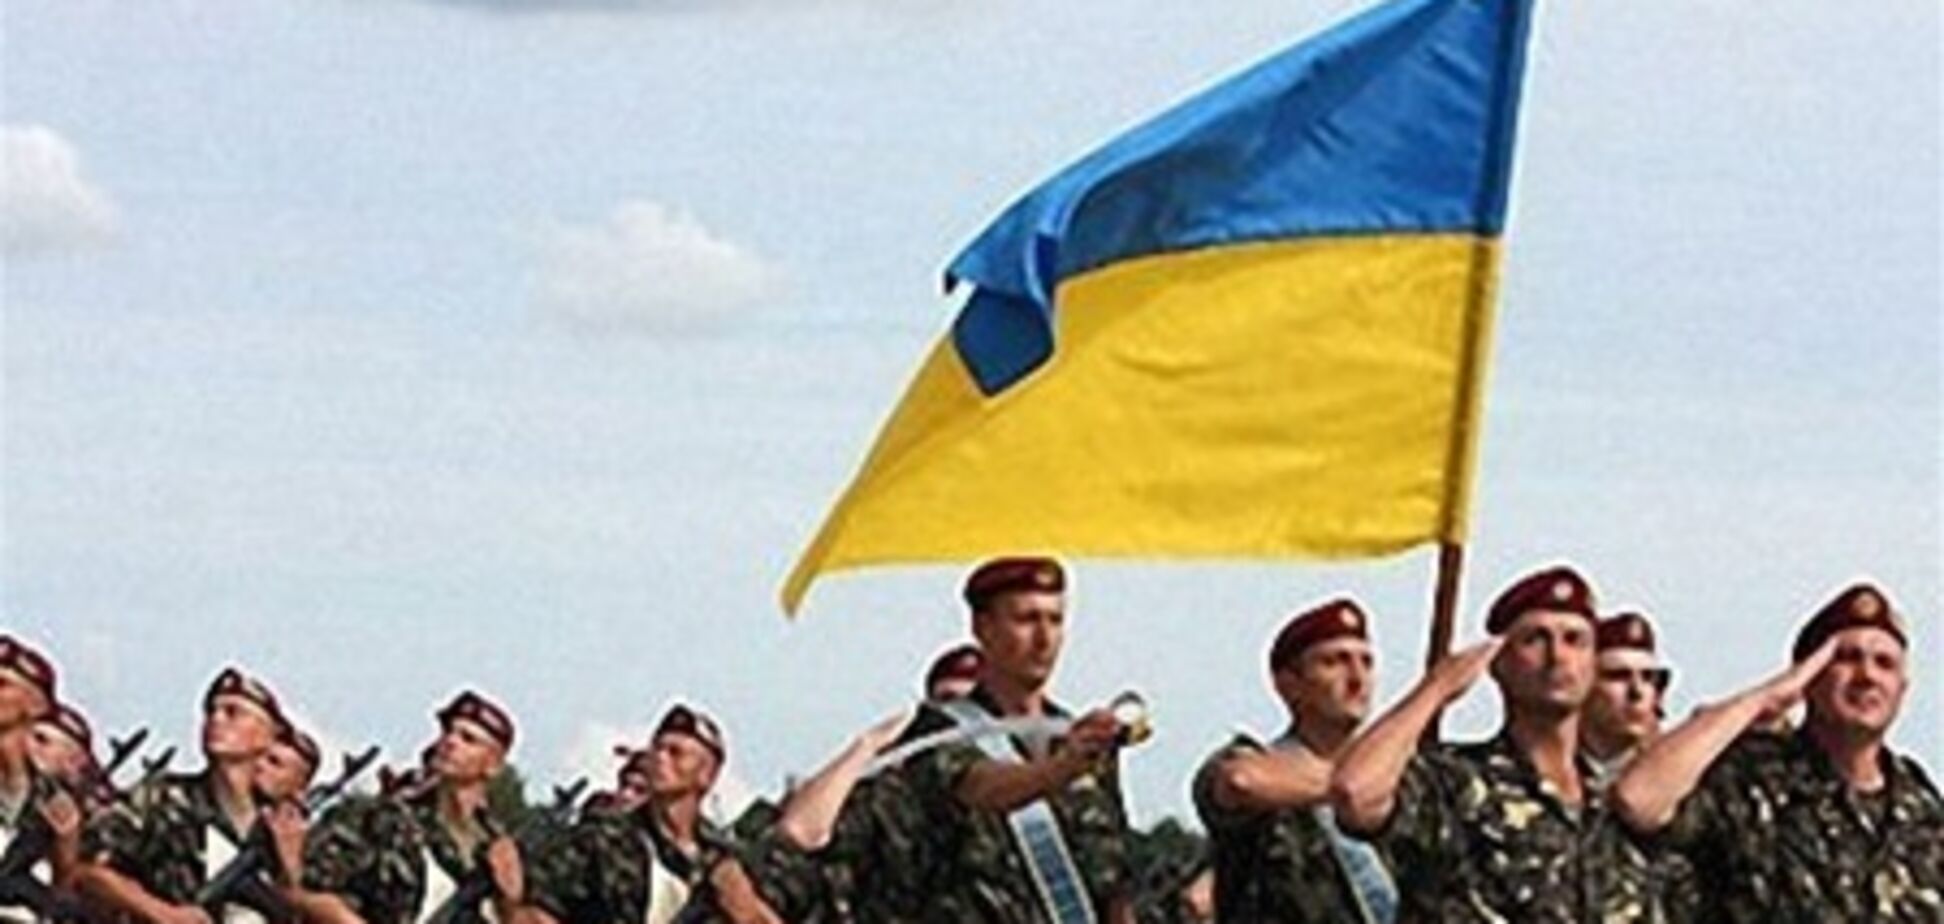 Внешнее влияние на Украину будет усиливаться - эксперт